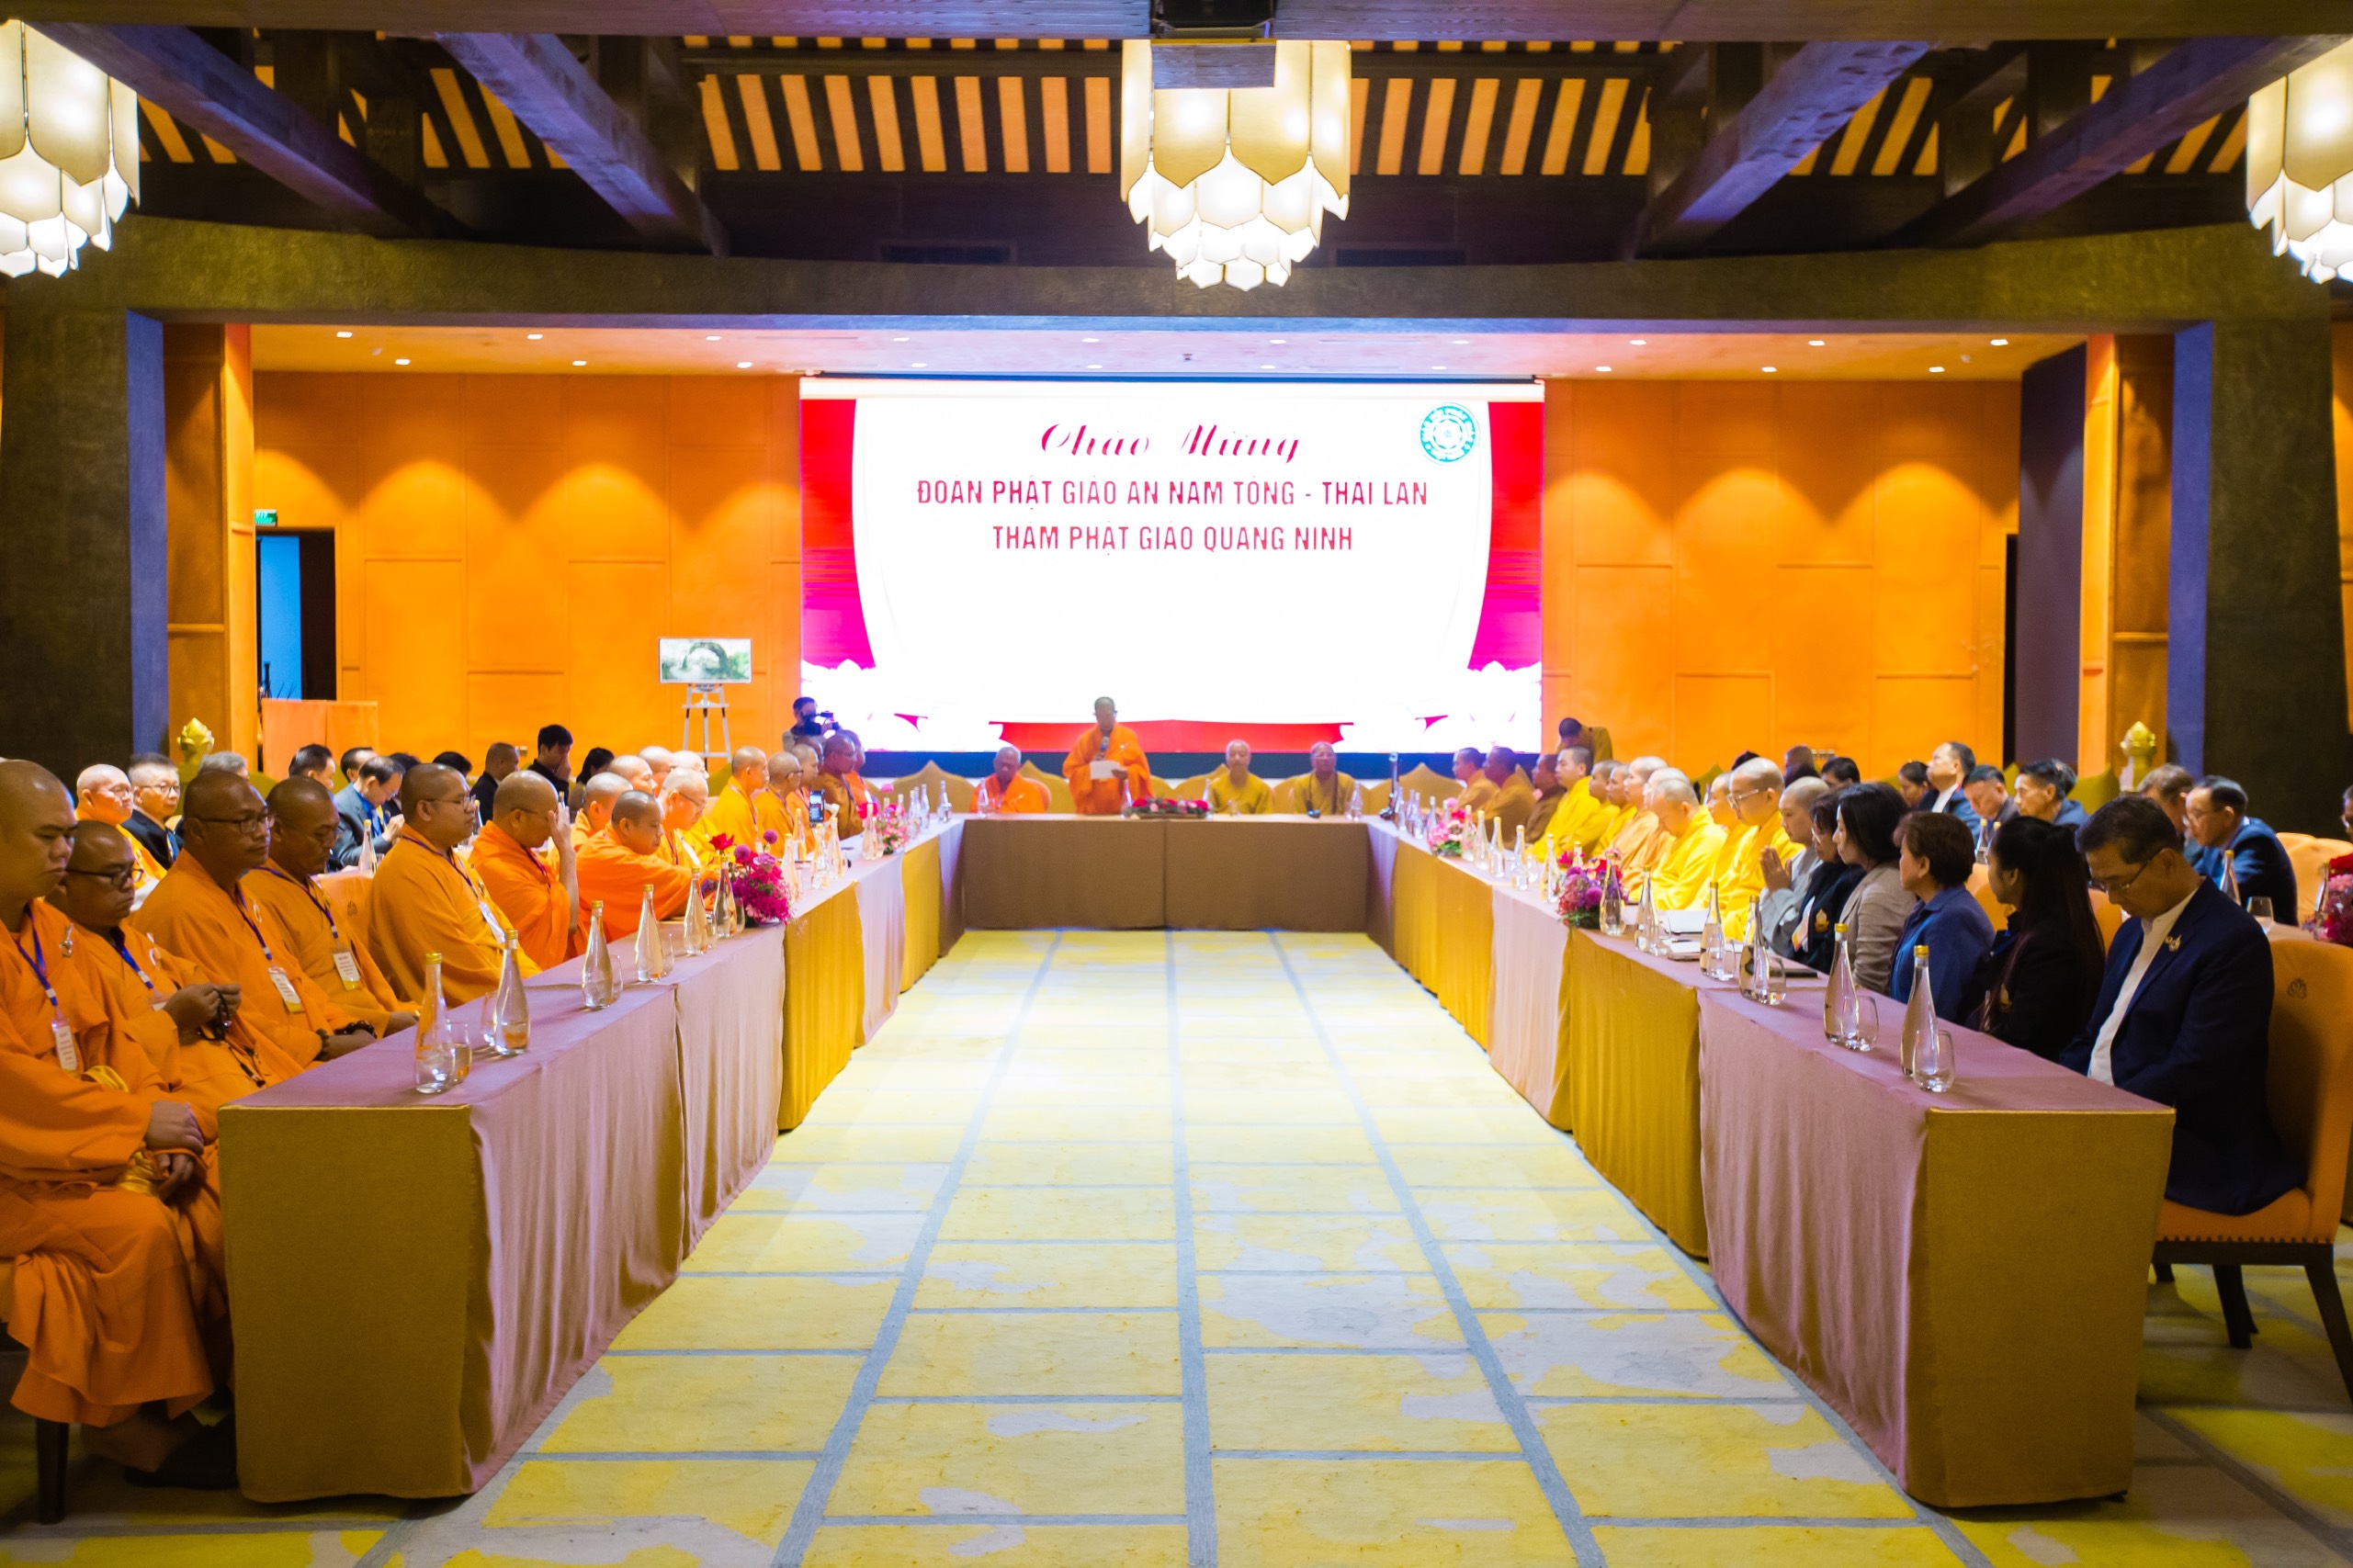 Đoàn đại biểu Phật giáo An Nam Tông – Thái Lan và đại diện kiều bào Việt Nam tại Thái Lan thăm Phật giáo Quảng Ninh 